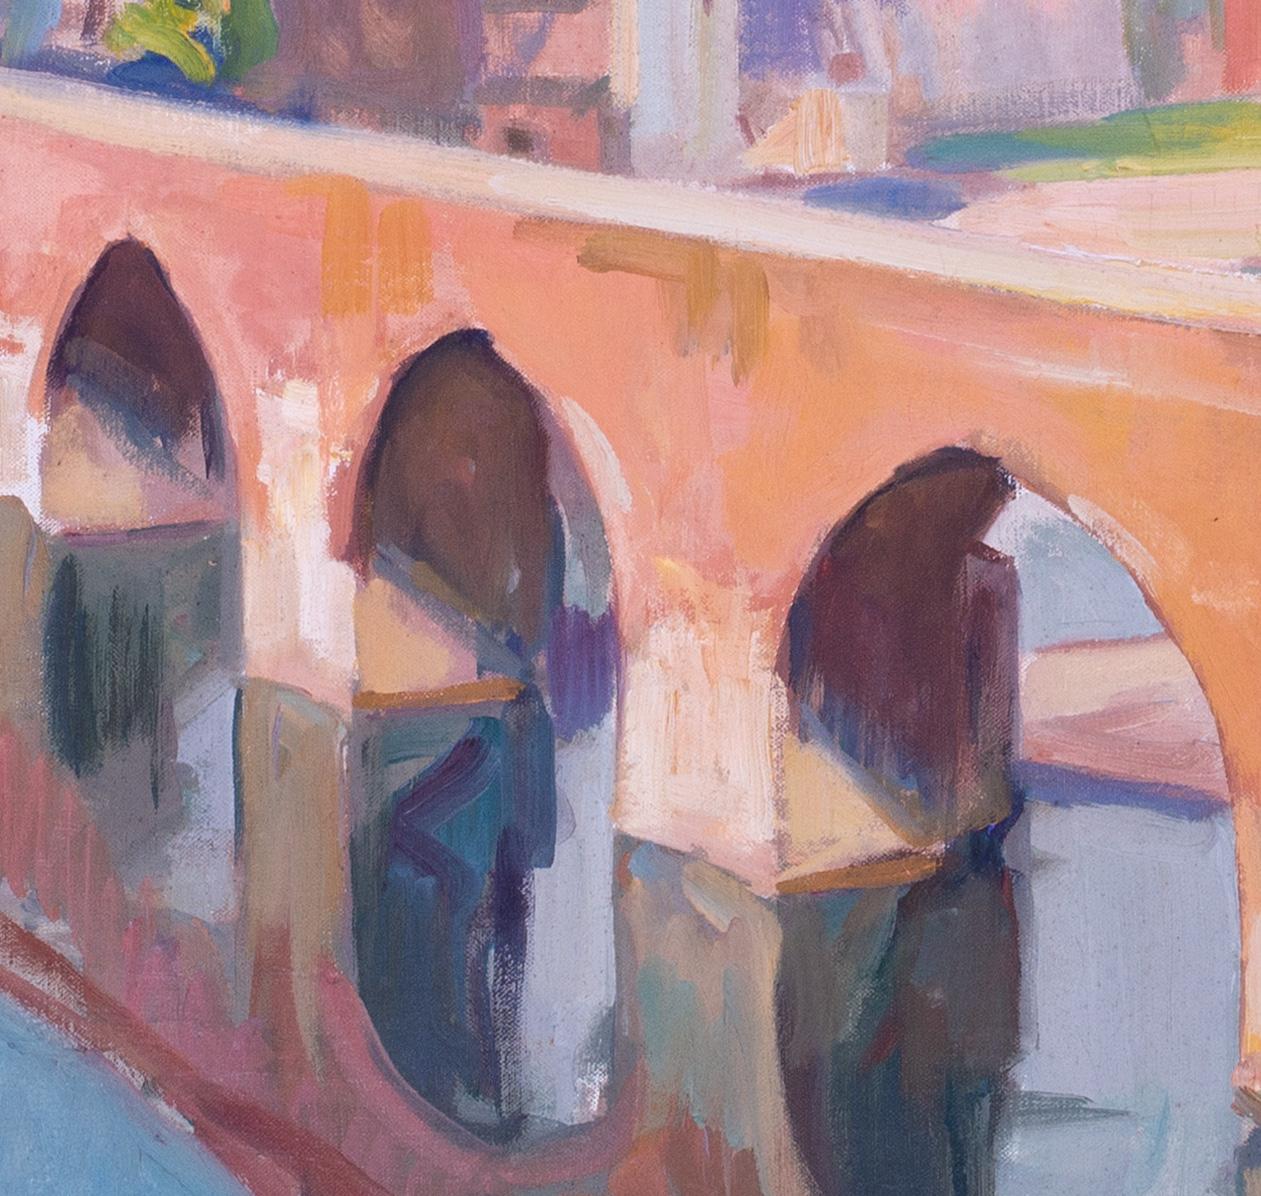 Peinture post-impressionniste française du pont d'Albi, France, par Wittmann - Post-impressionnisme Painting par Charles Wittmann